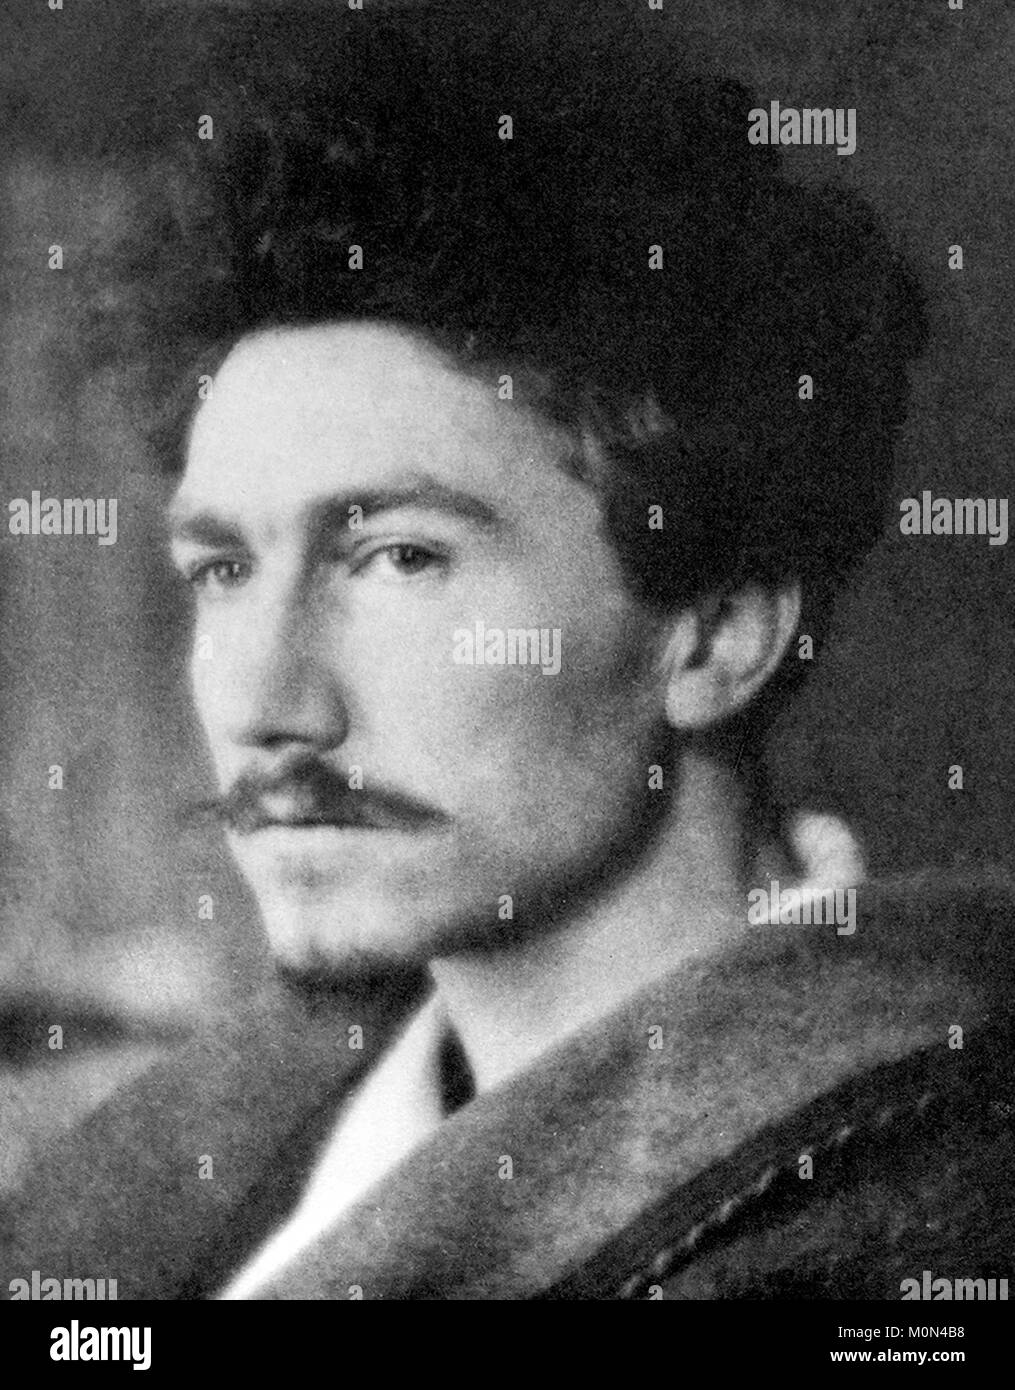 Ezra Pound. Portrait of the American poet Ezra Weston Loomis Pound (1885-1972) by Alvin Langdon Coburn, 1913. Stock Photo